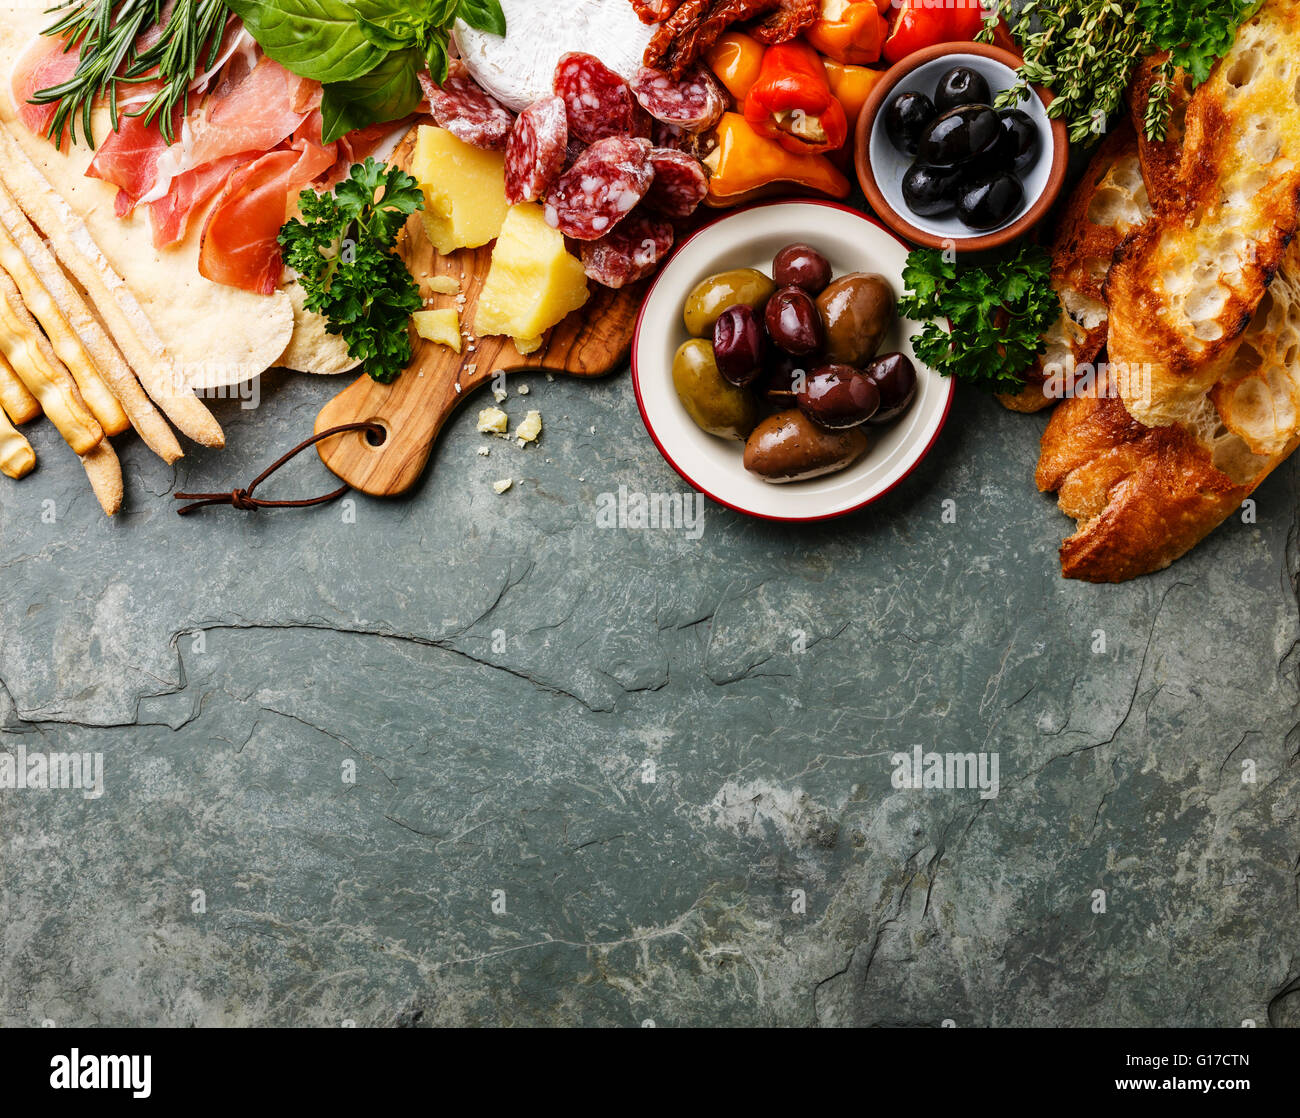 Ingrédients alimentaires italien de fond avec jambon, salami, parmesan, olives, pain Banque D'Images